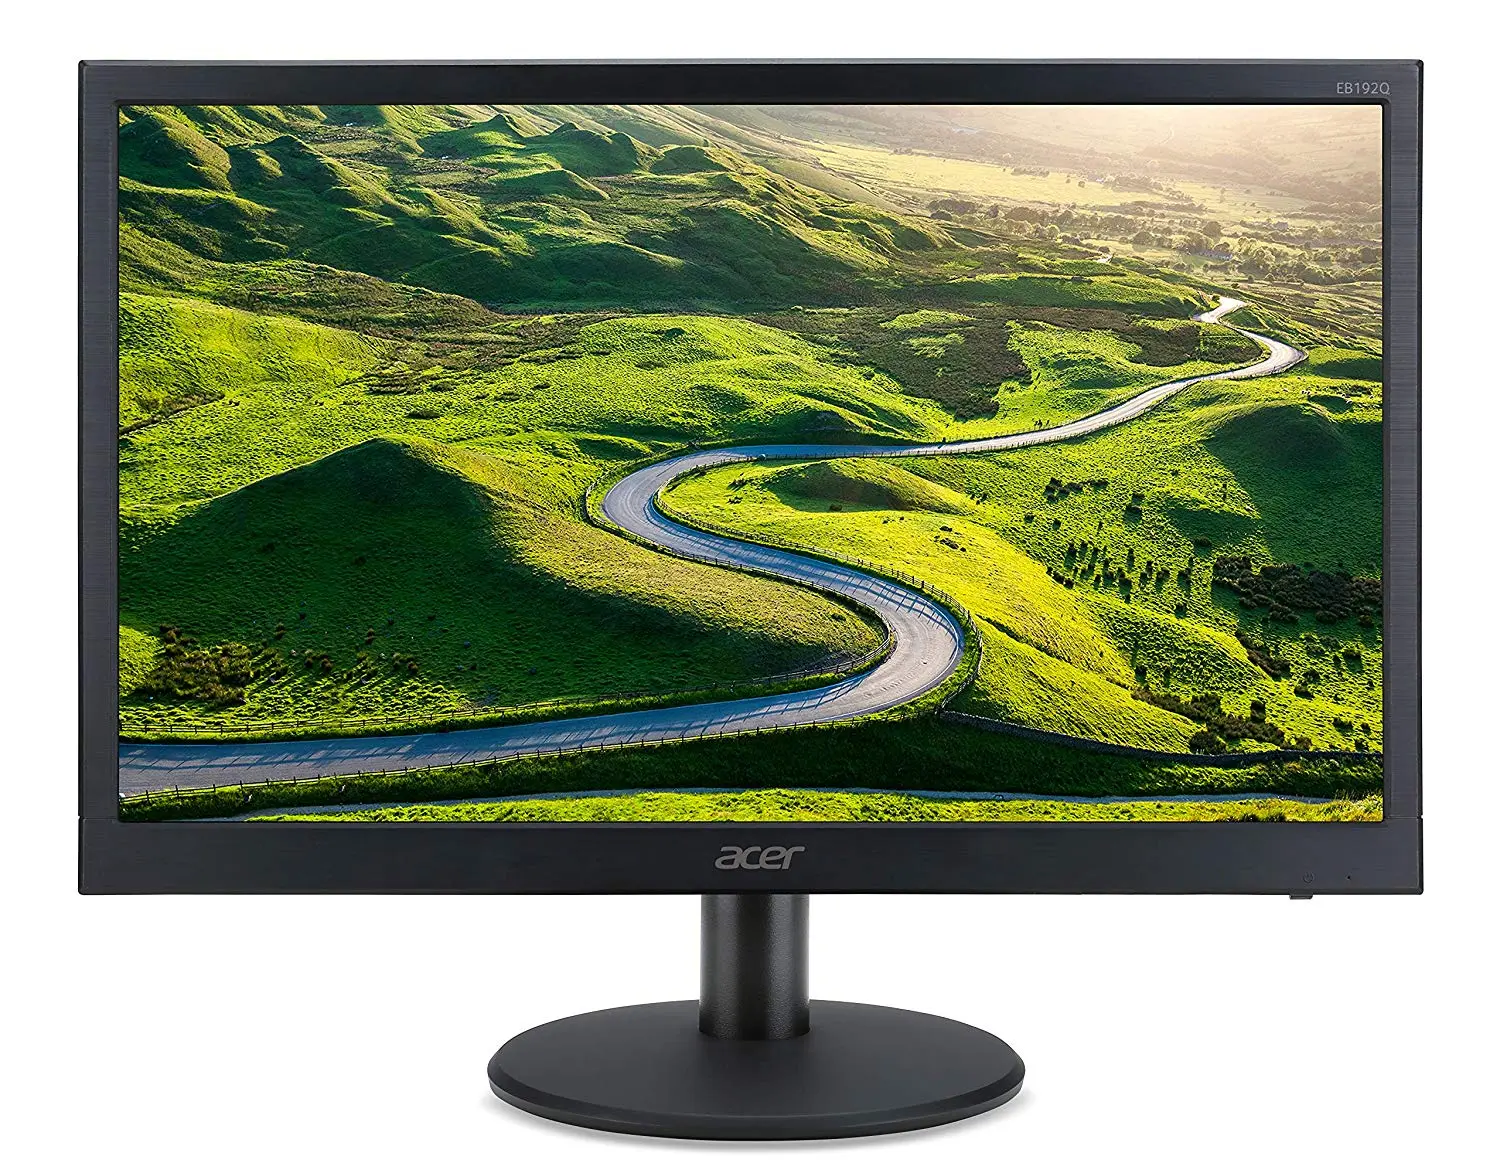 Acer 18.5 inch (46.99 cm) LED Backlit Computer Monitor - EB192Q (Black)